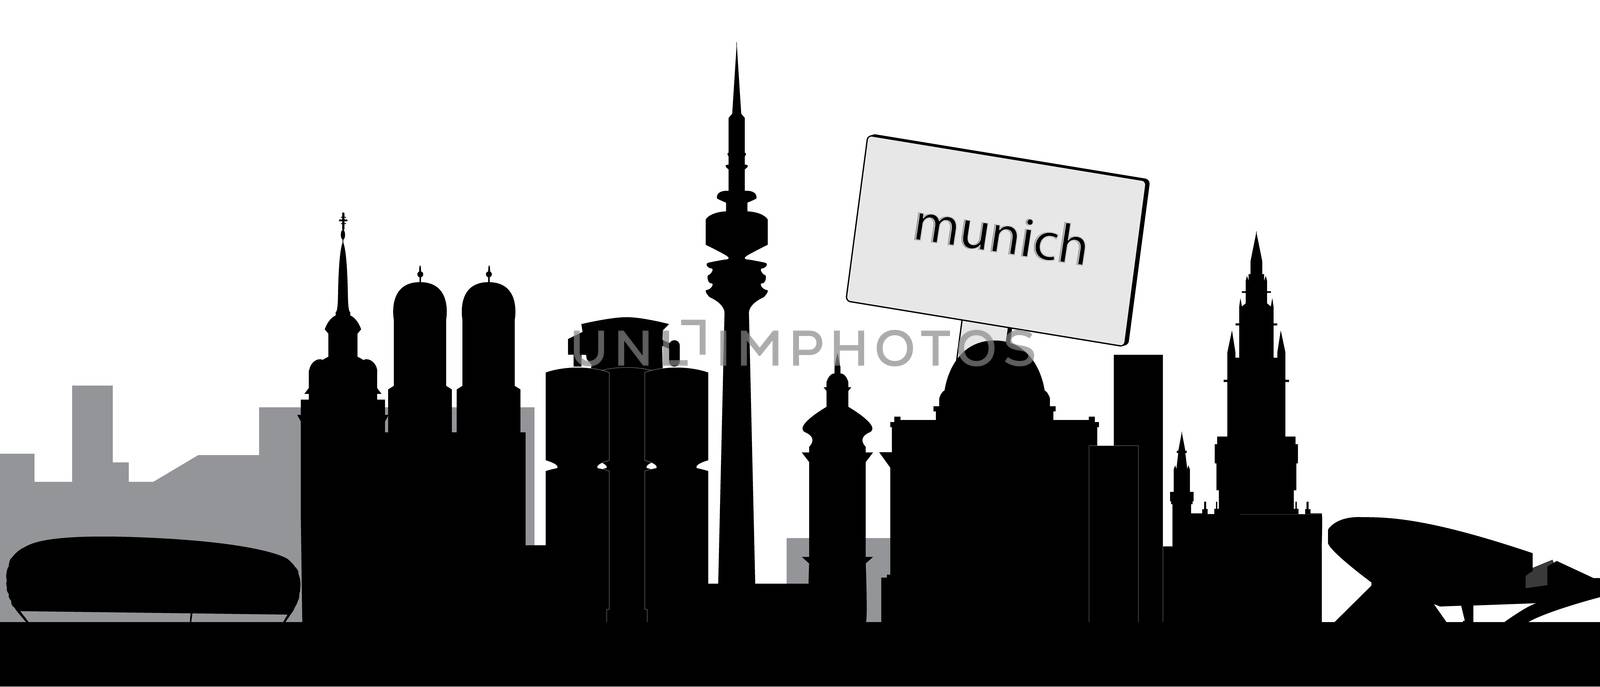 munchen skyline by compuinfoto